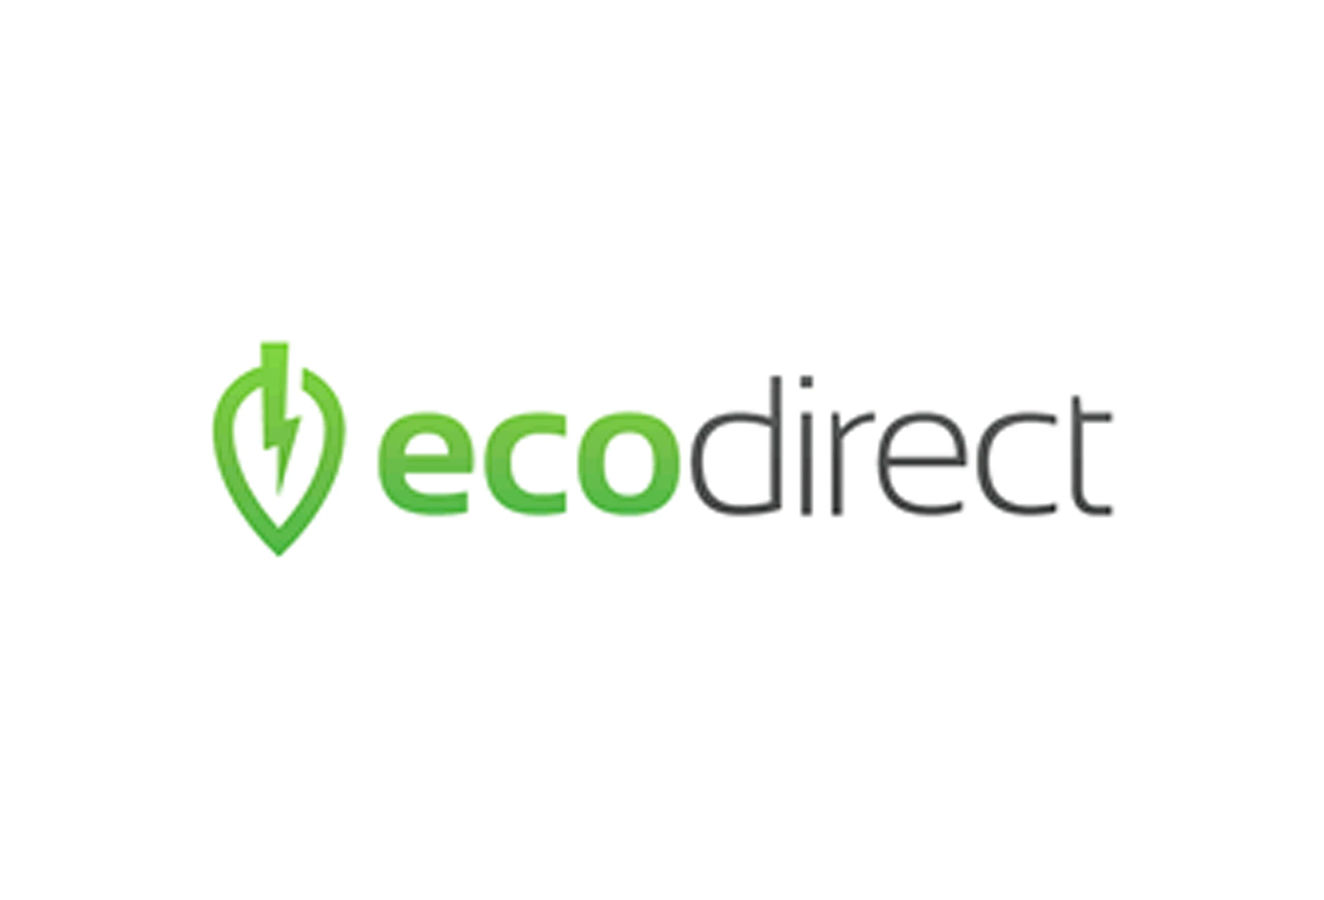 EcoDirect